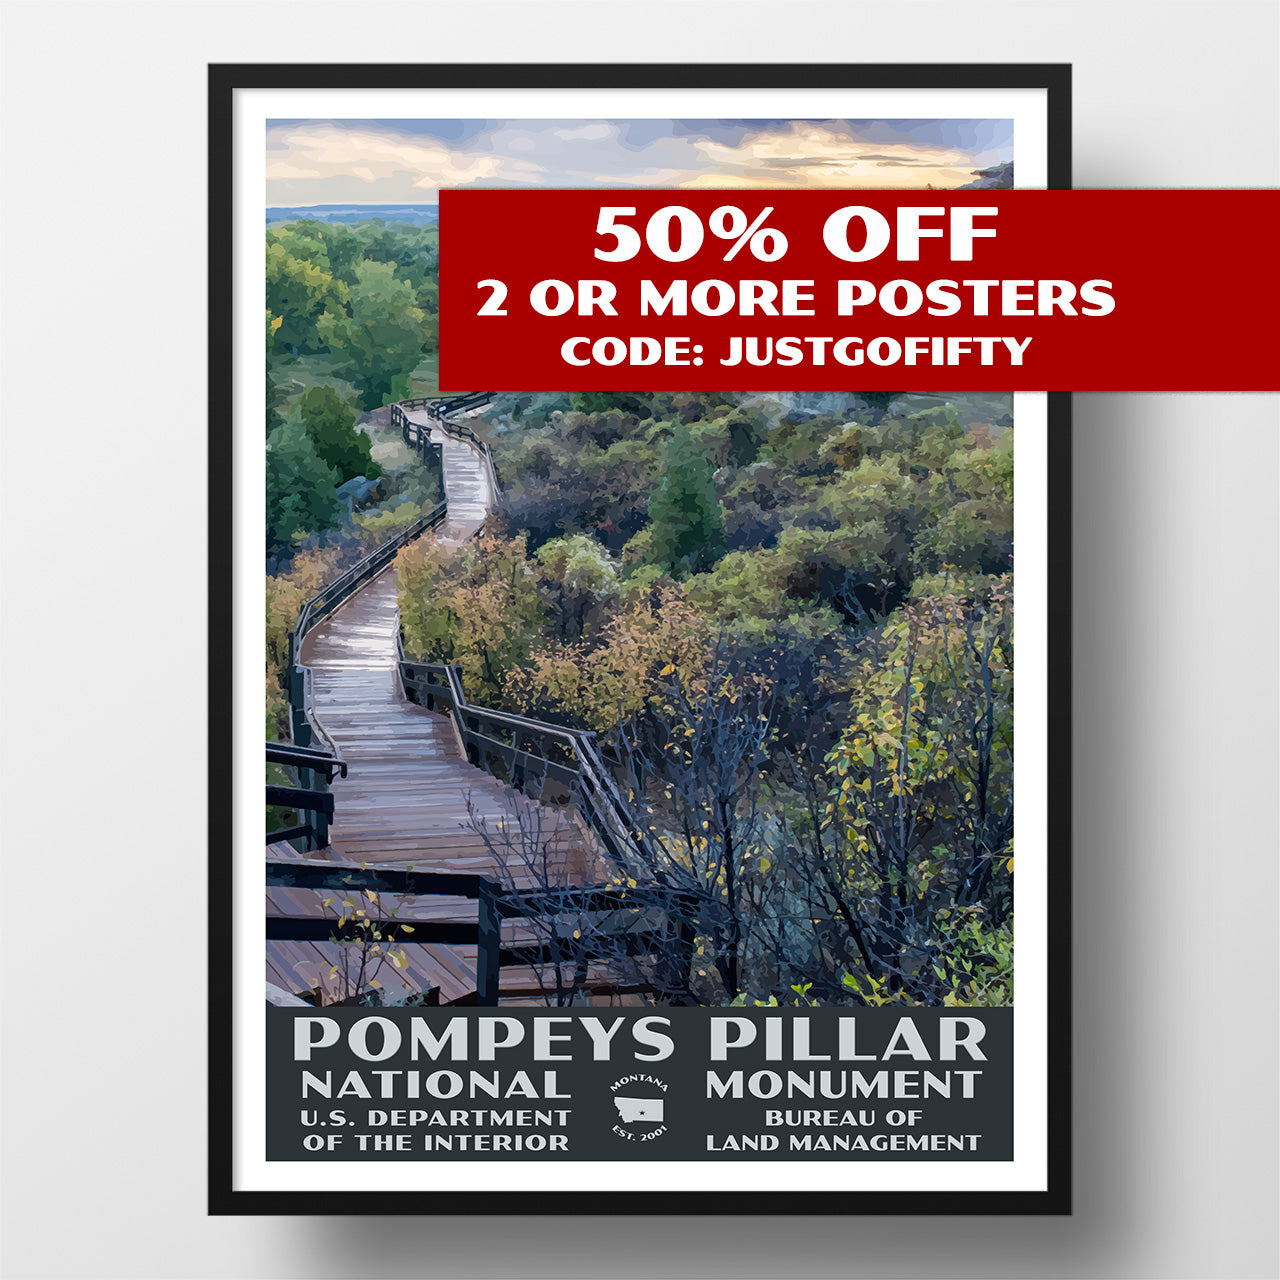 Pompeys Pillar National Monument poster